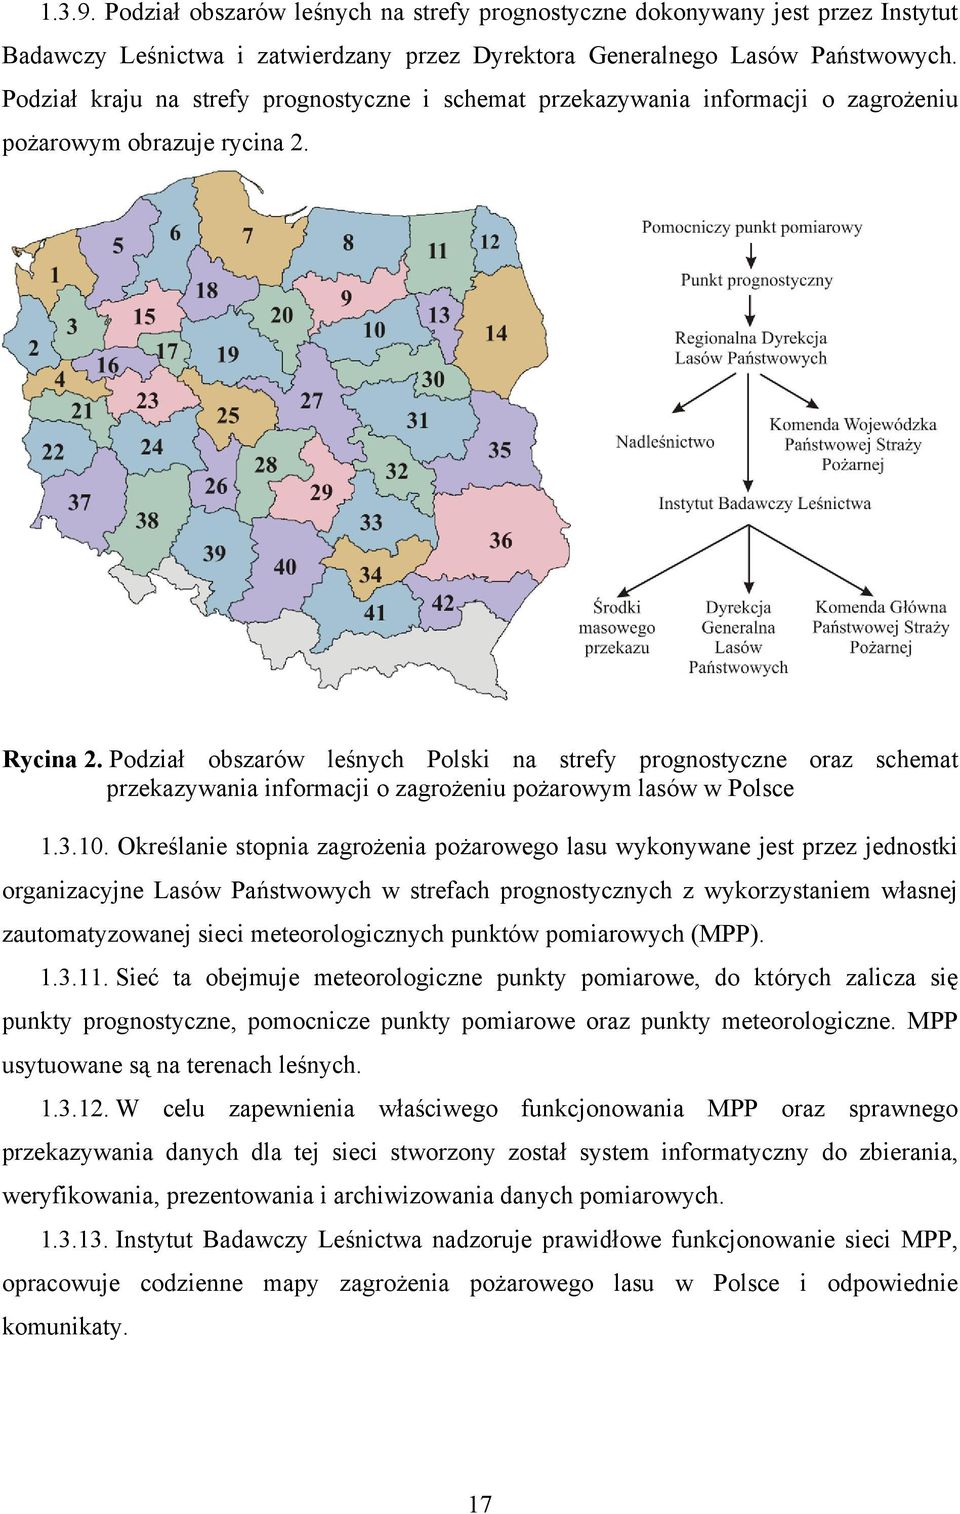 Podział obszarów leśnych Polski na strefy prognostyczne oraz schemat przekazywania informacji o zagrożeniu pożarowym lasów w Polsce 1.3.10.